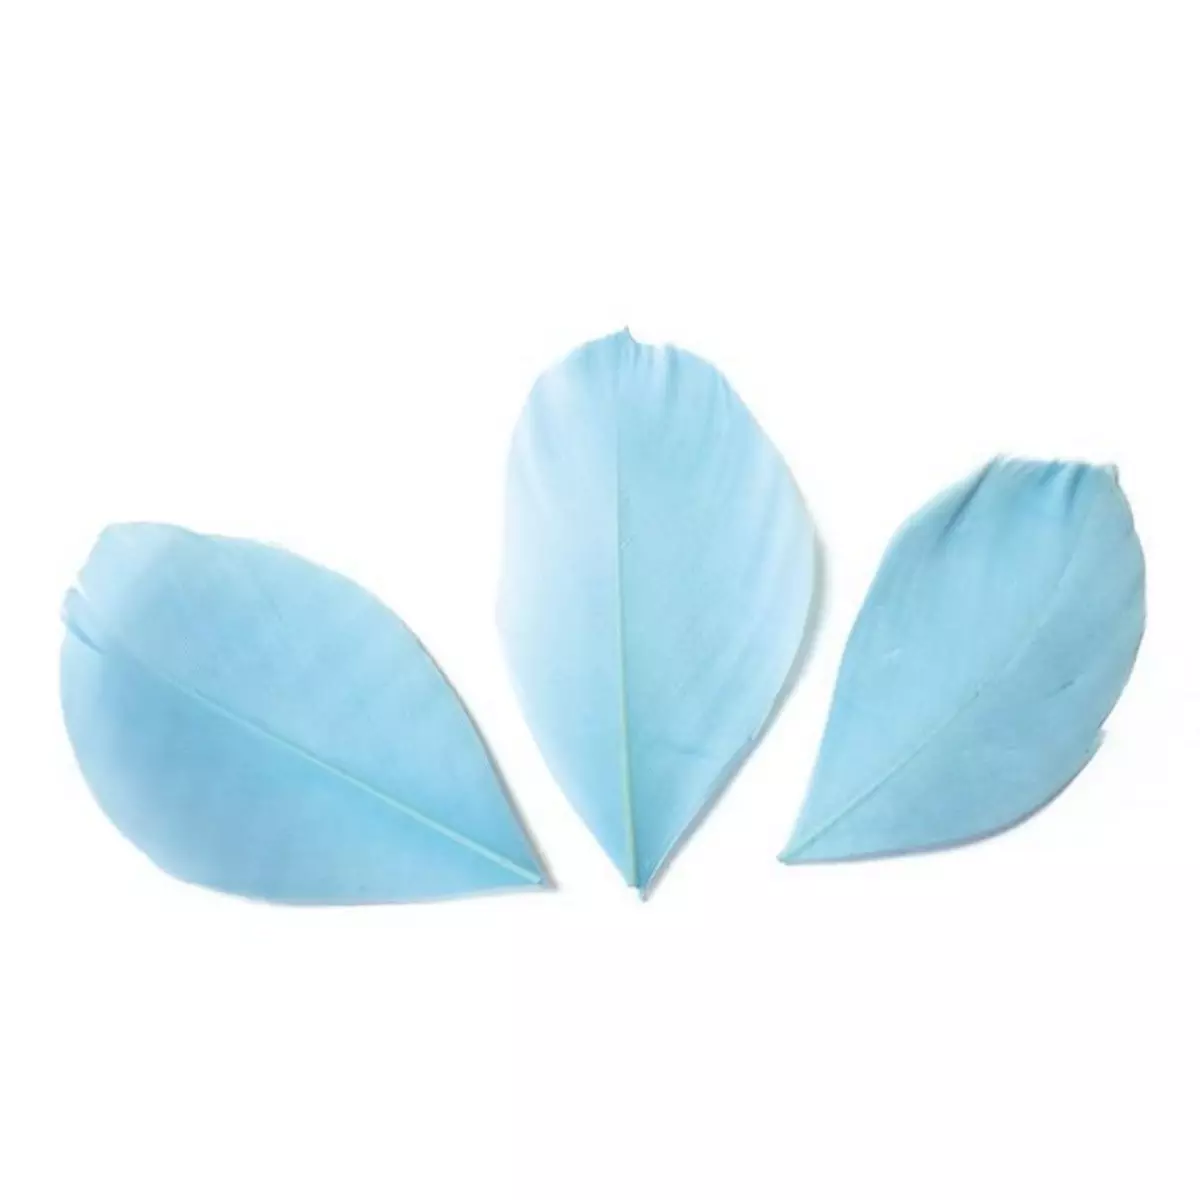 Graine créative 50 plumes coupées - Bleu clair 6 cm